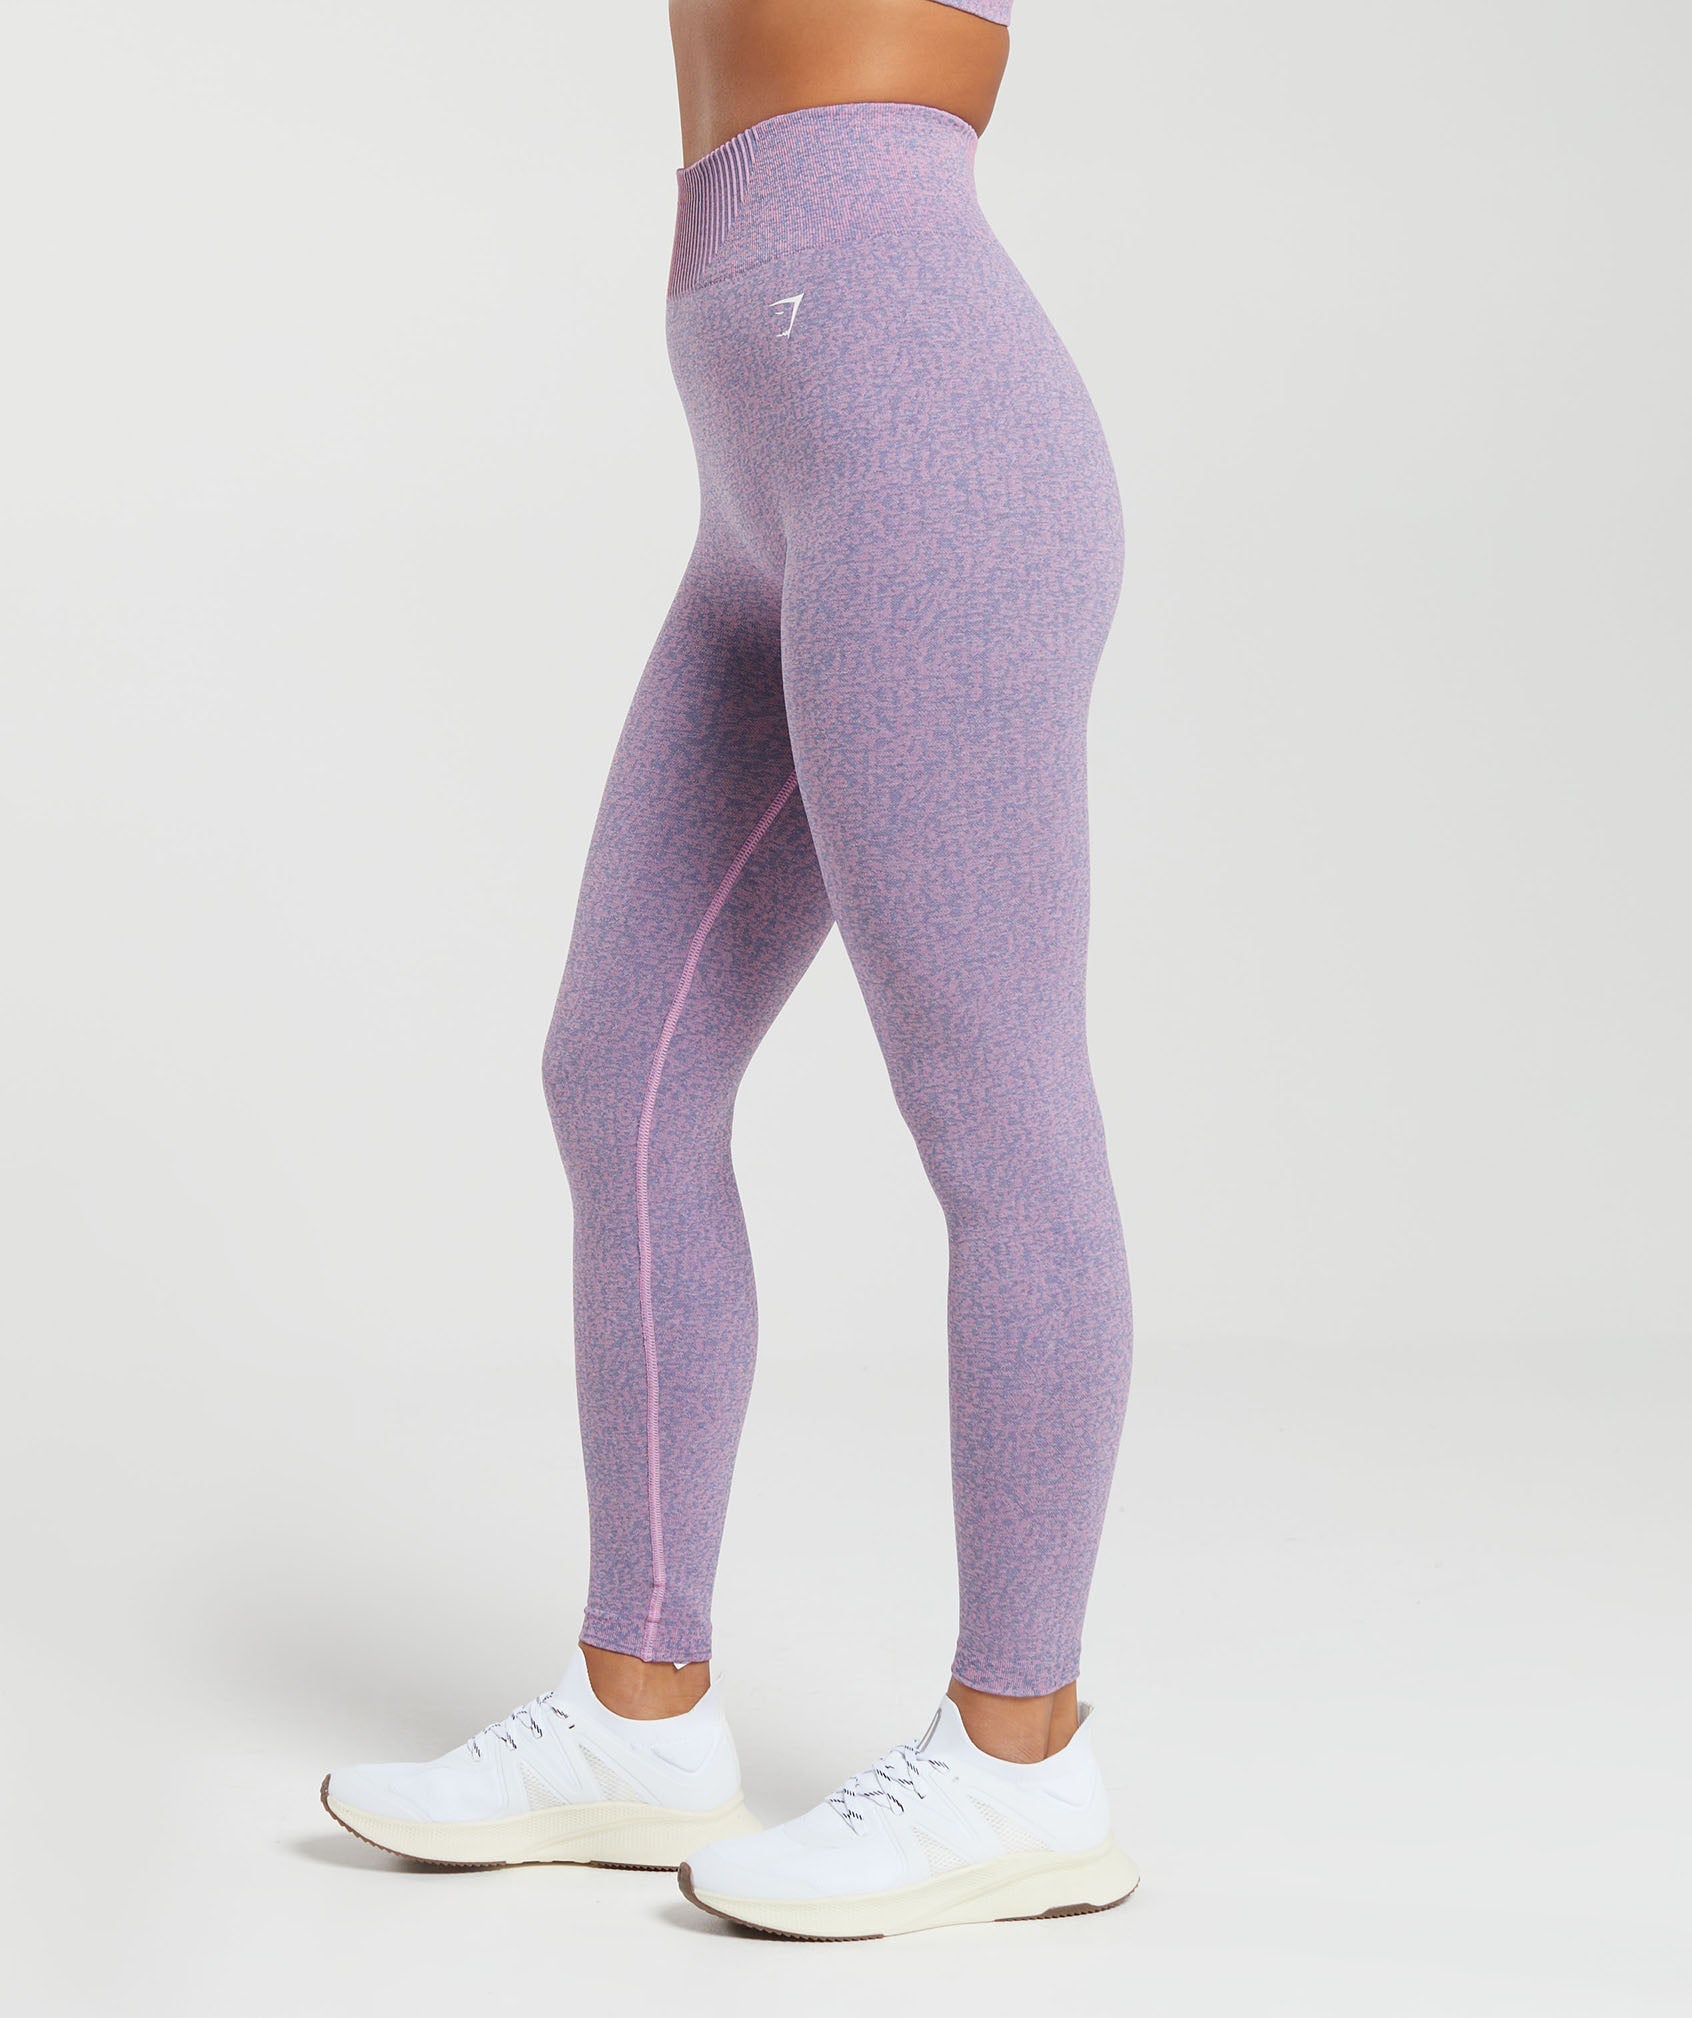 Gymshark Women L Adapt Marl Seamless Leggings Light Purple Ankle